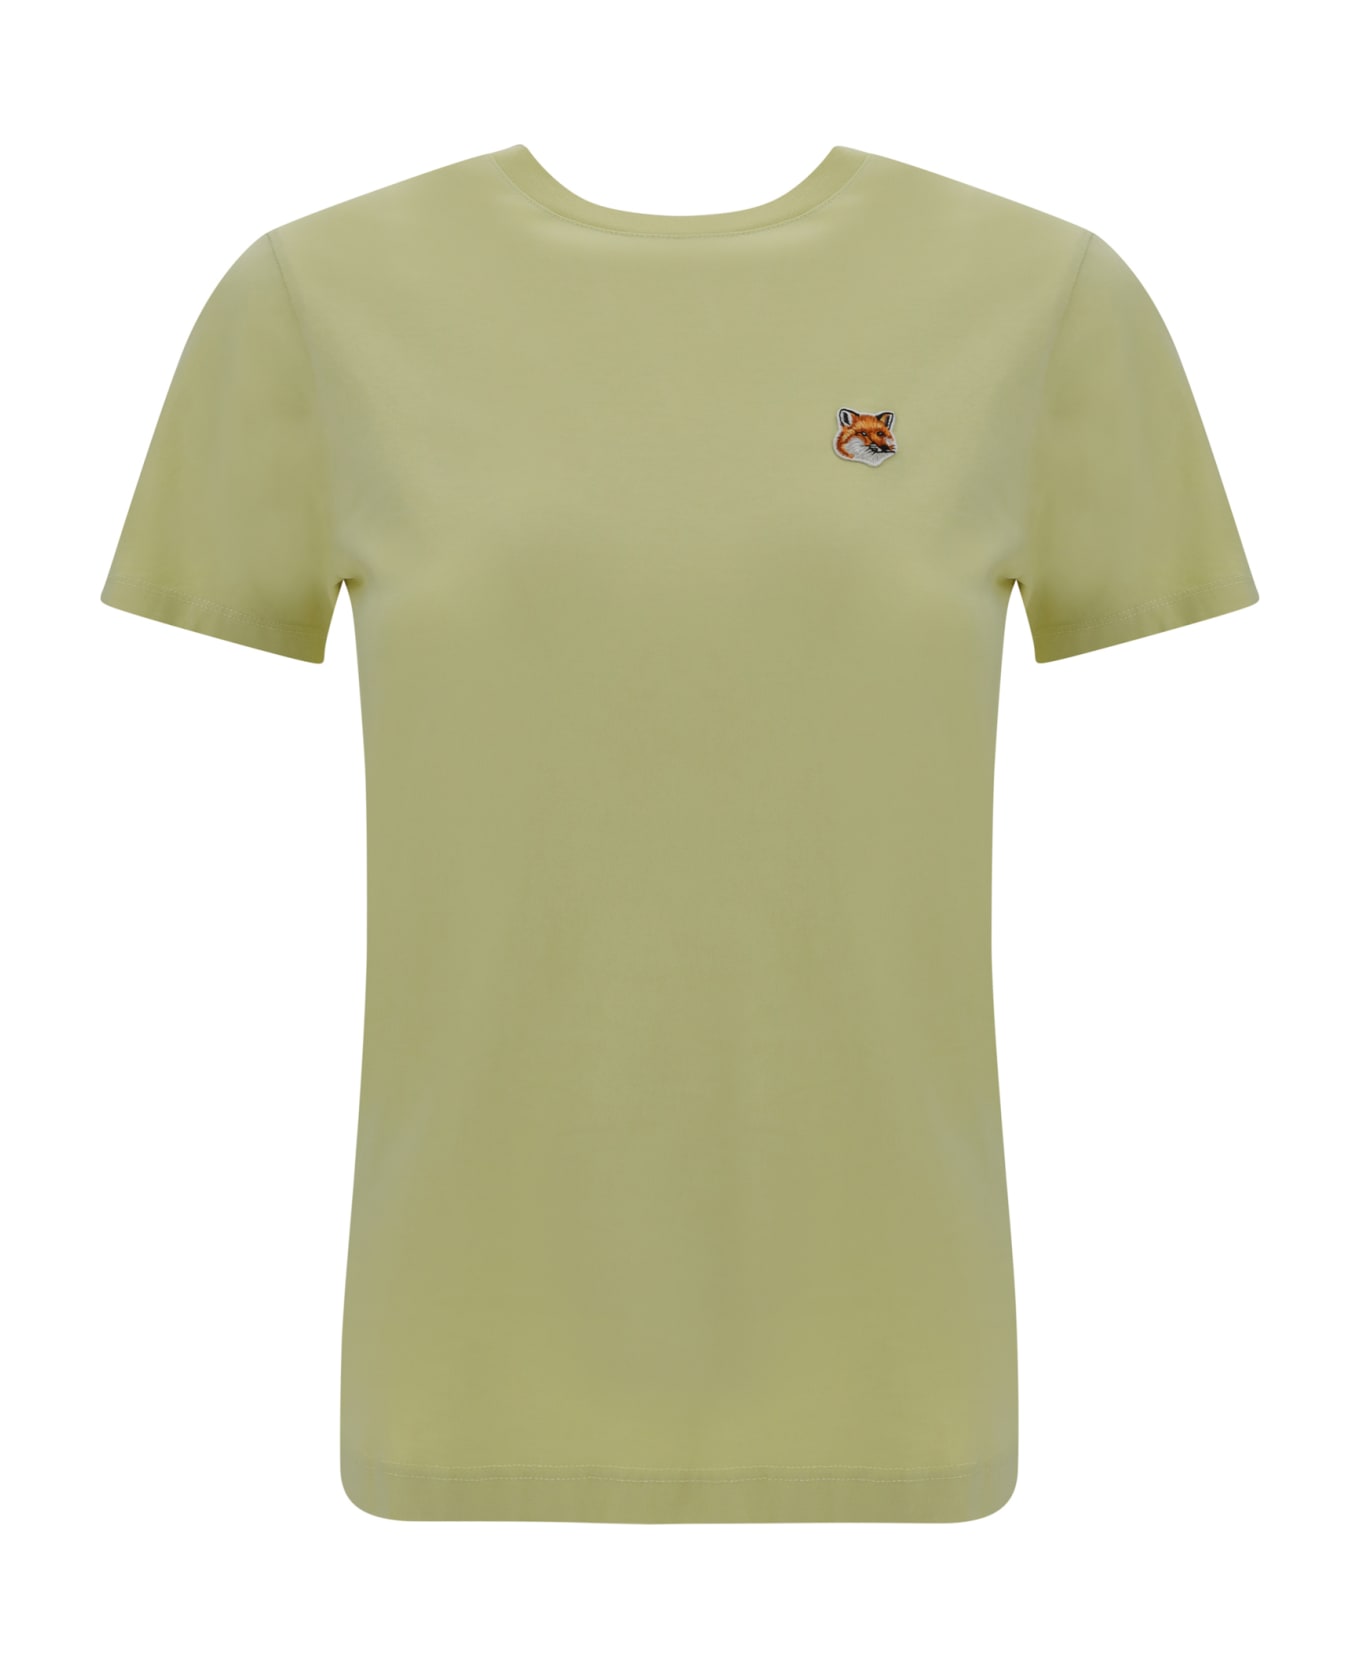 Maison Kitsuné T-shirt - Chalk Yellow